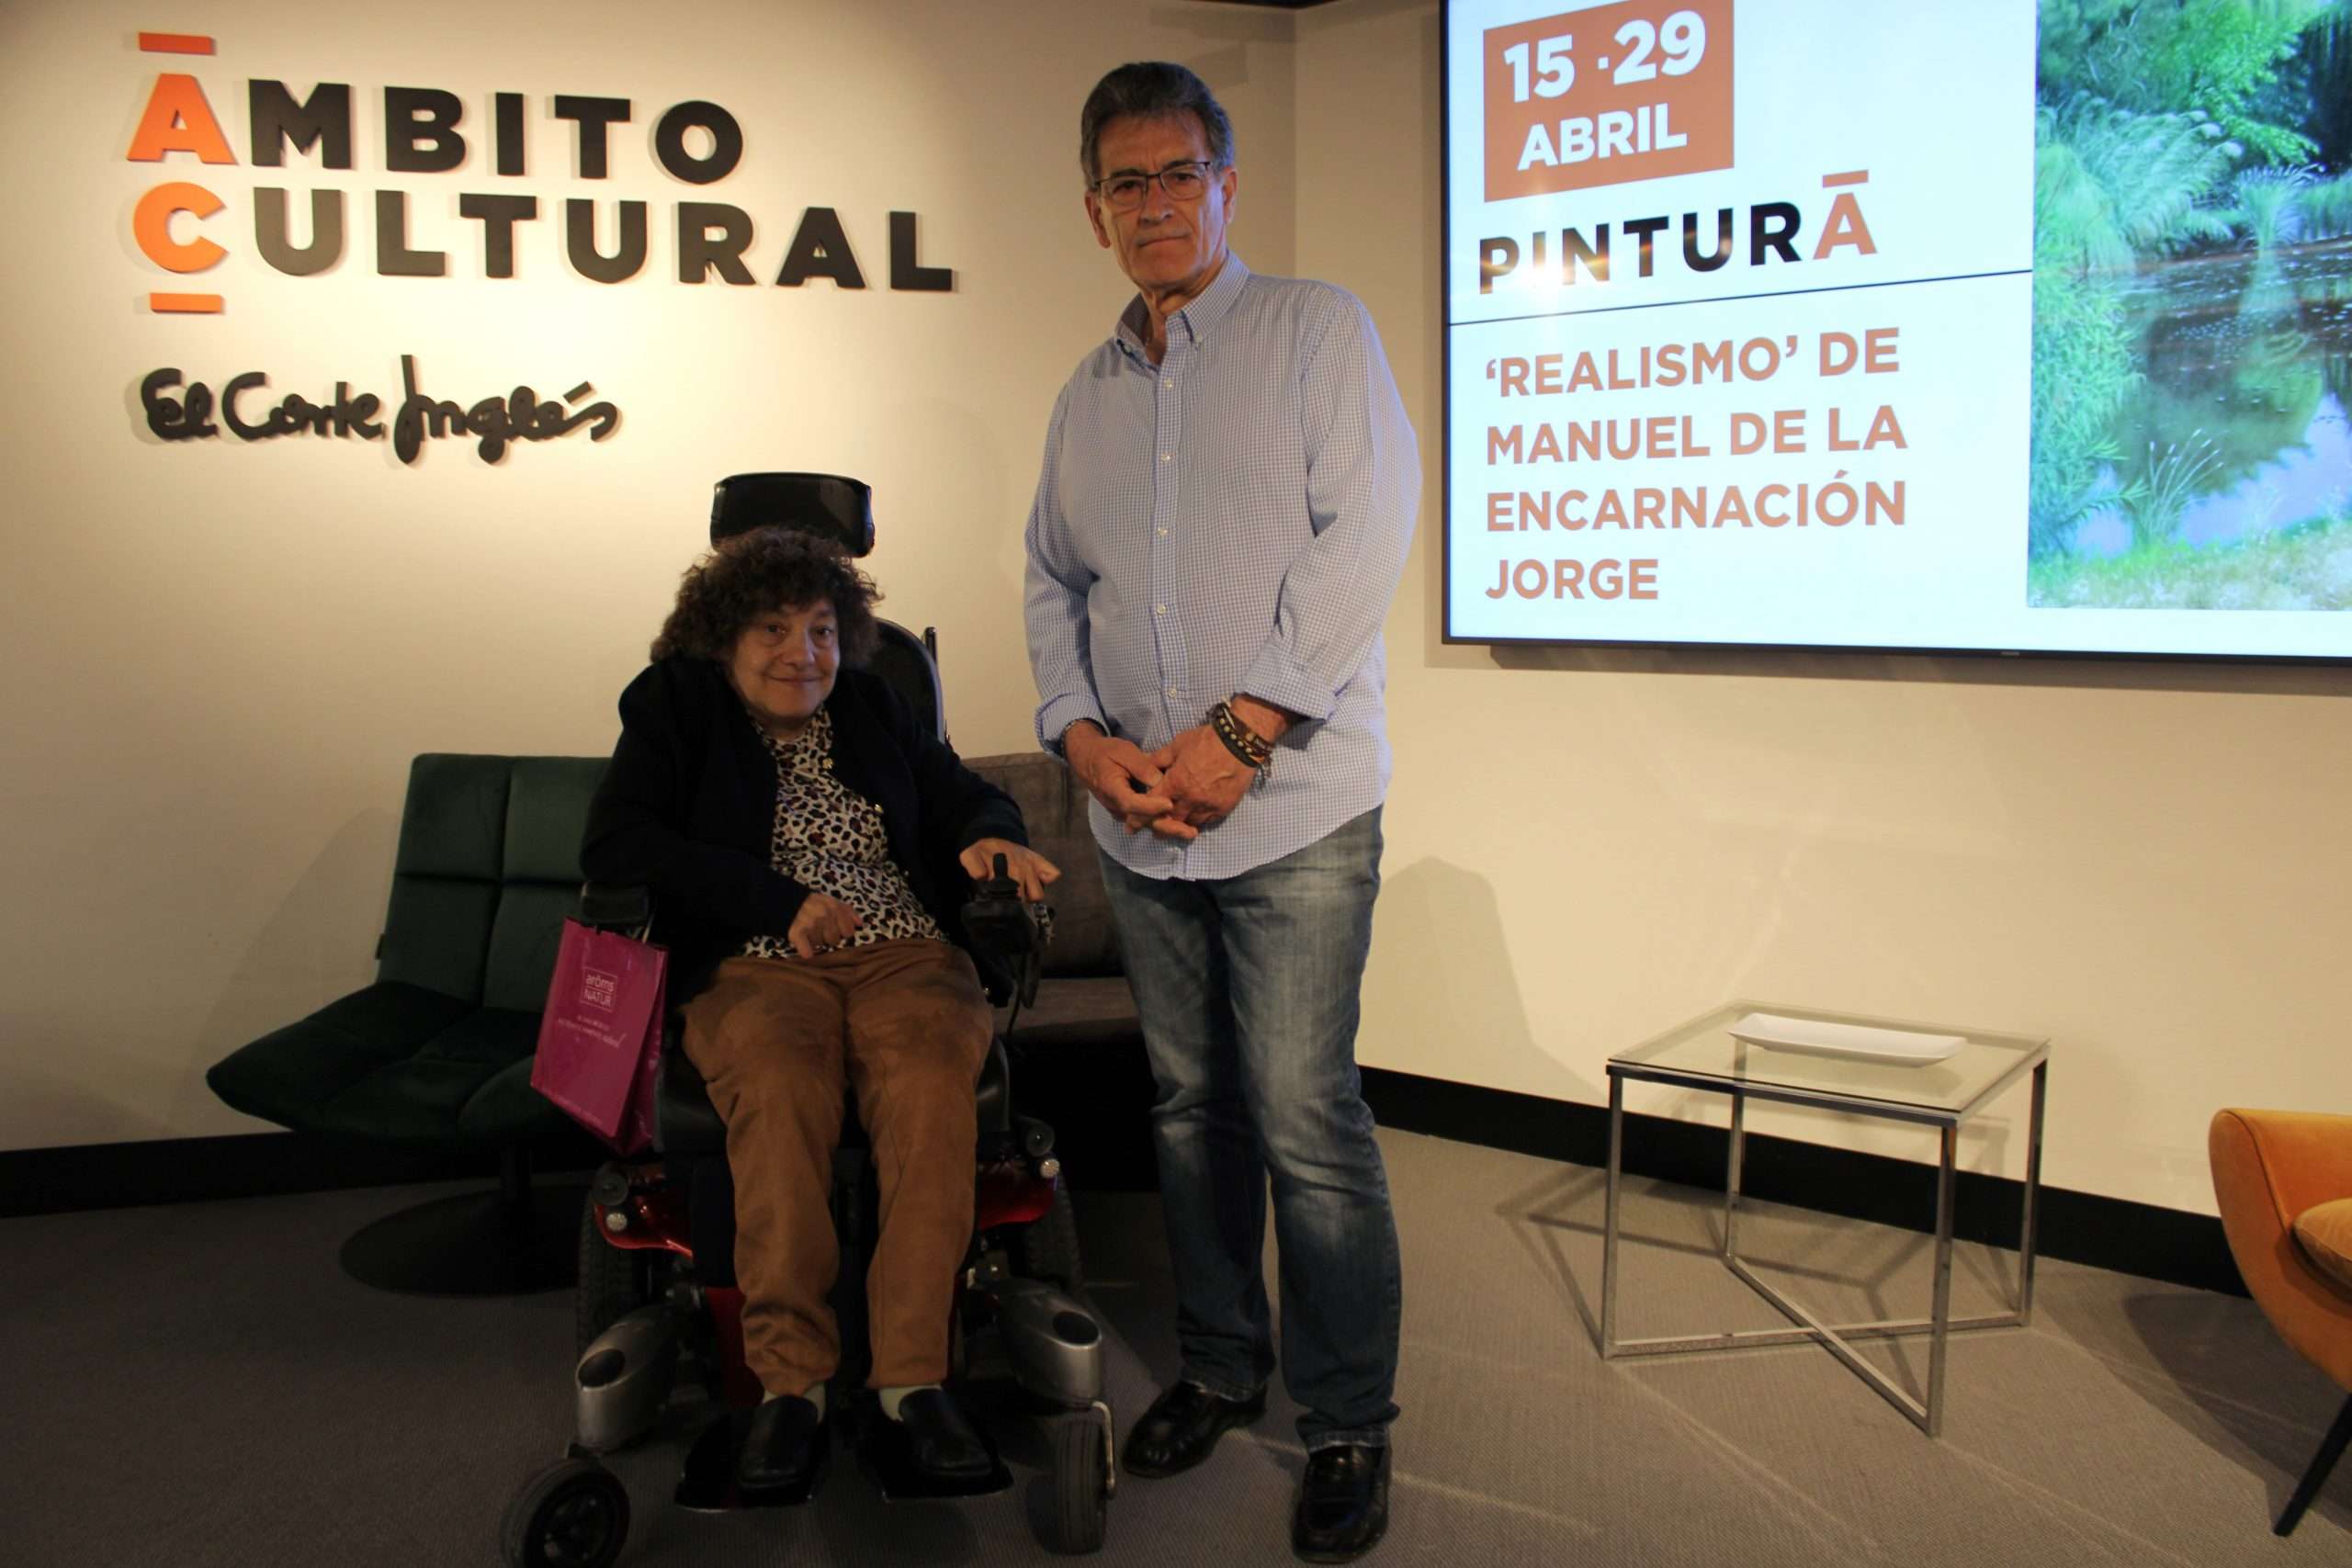 Manuel de la Encarnación expone en El Corte Inglés de Badajoz. “Pinto para hacer feliz a la gente”